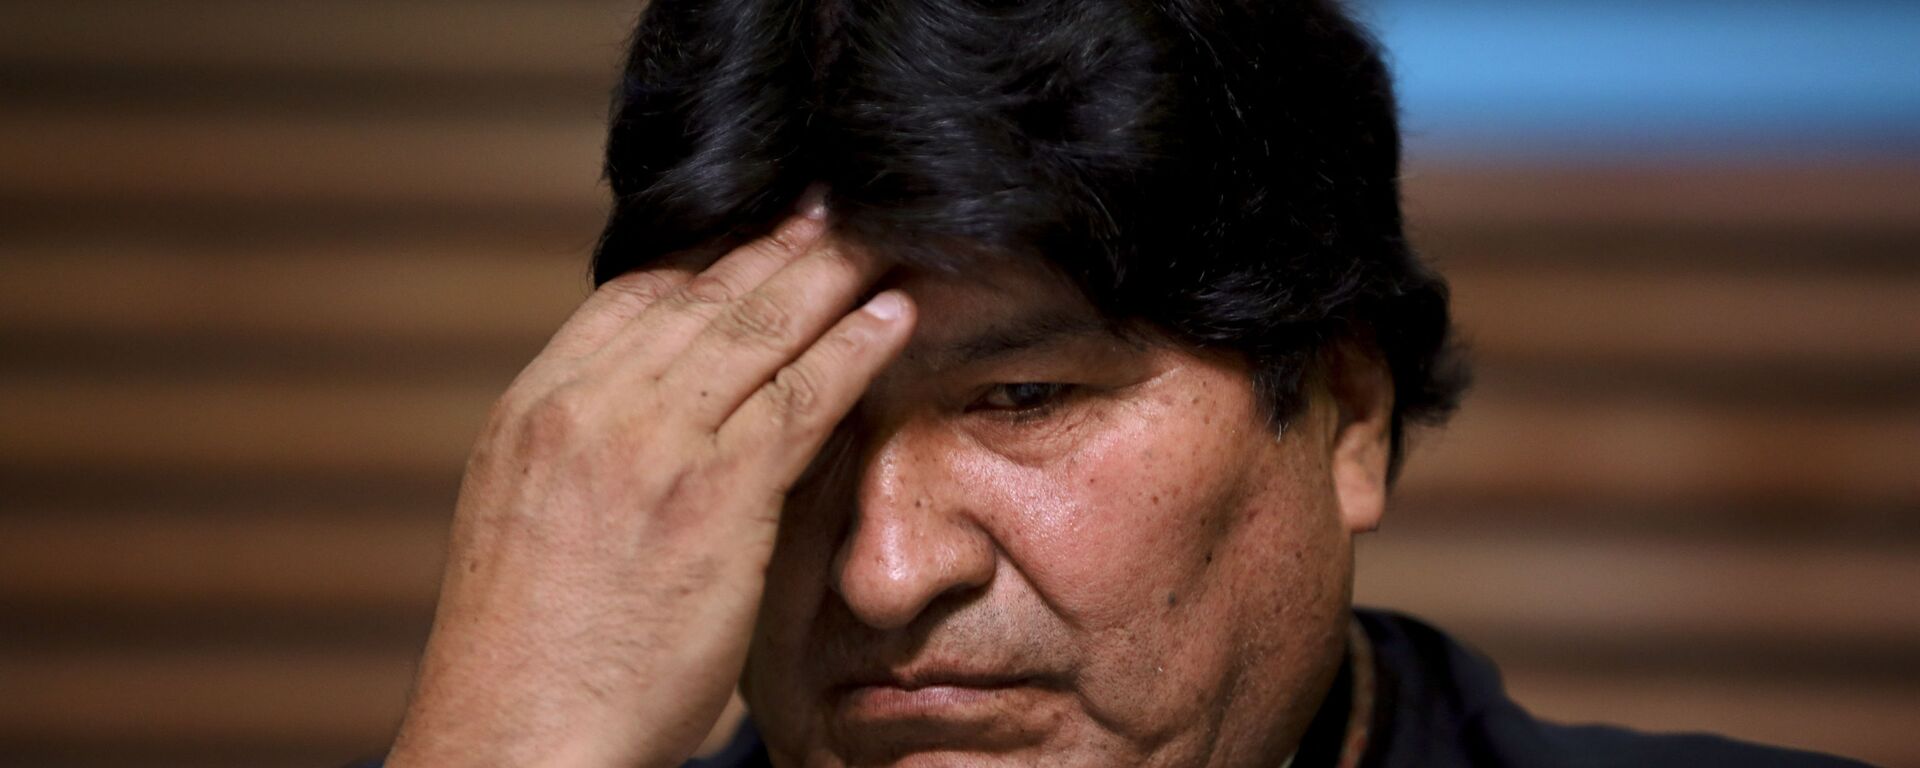 Evo Morales, expresidente de Bolivia - Sputnik Mundo, 1920, 14.07.2021